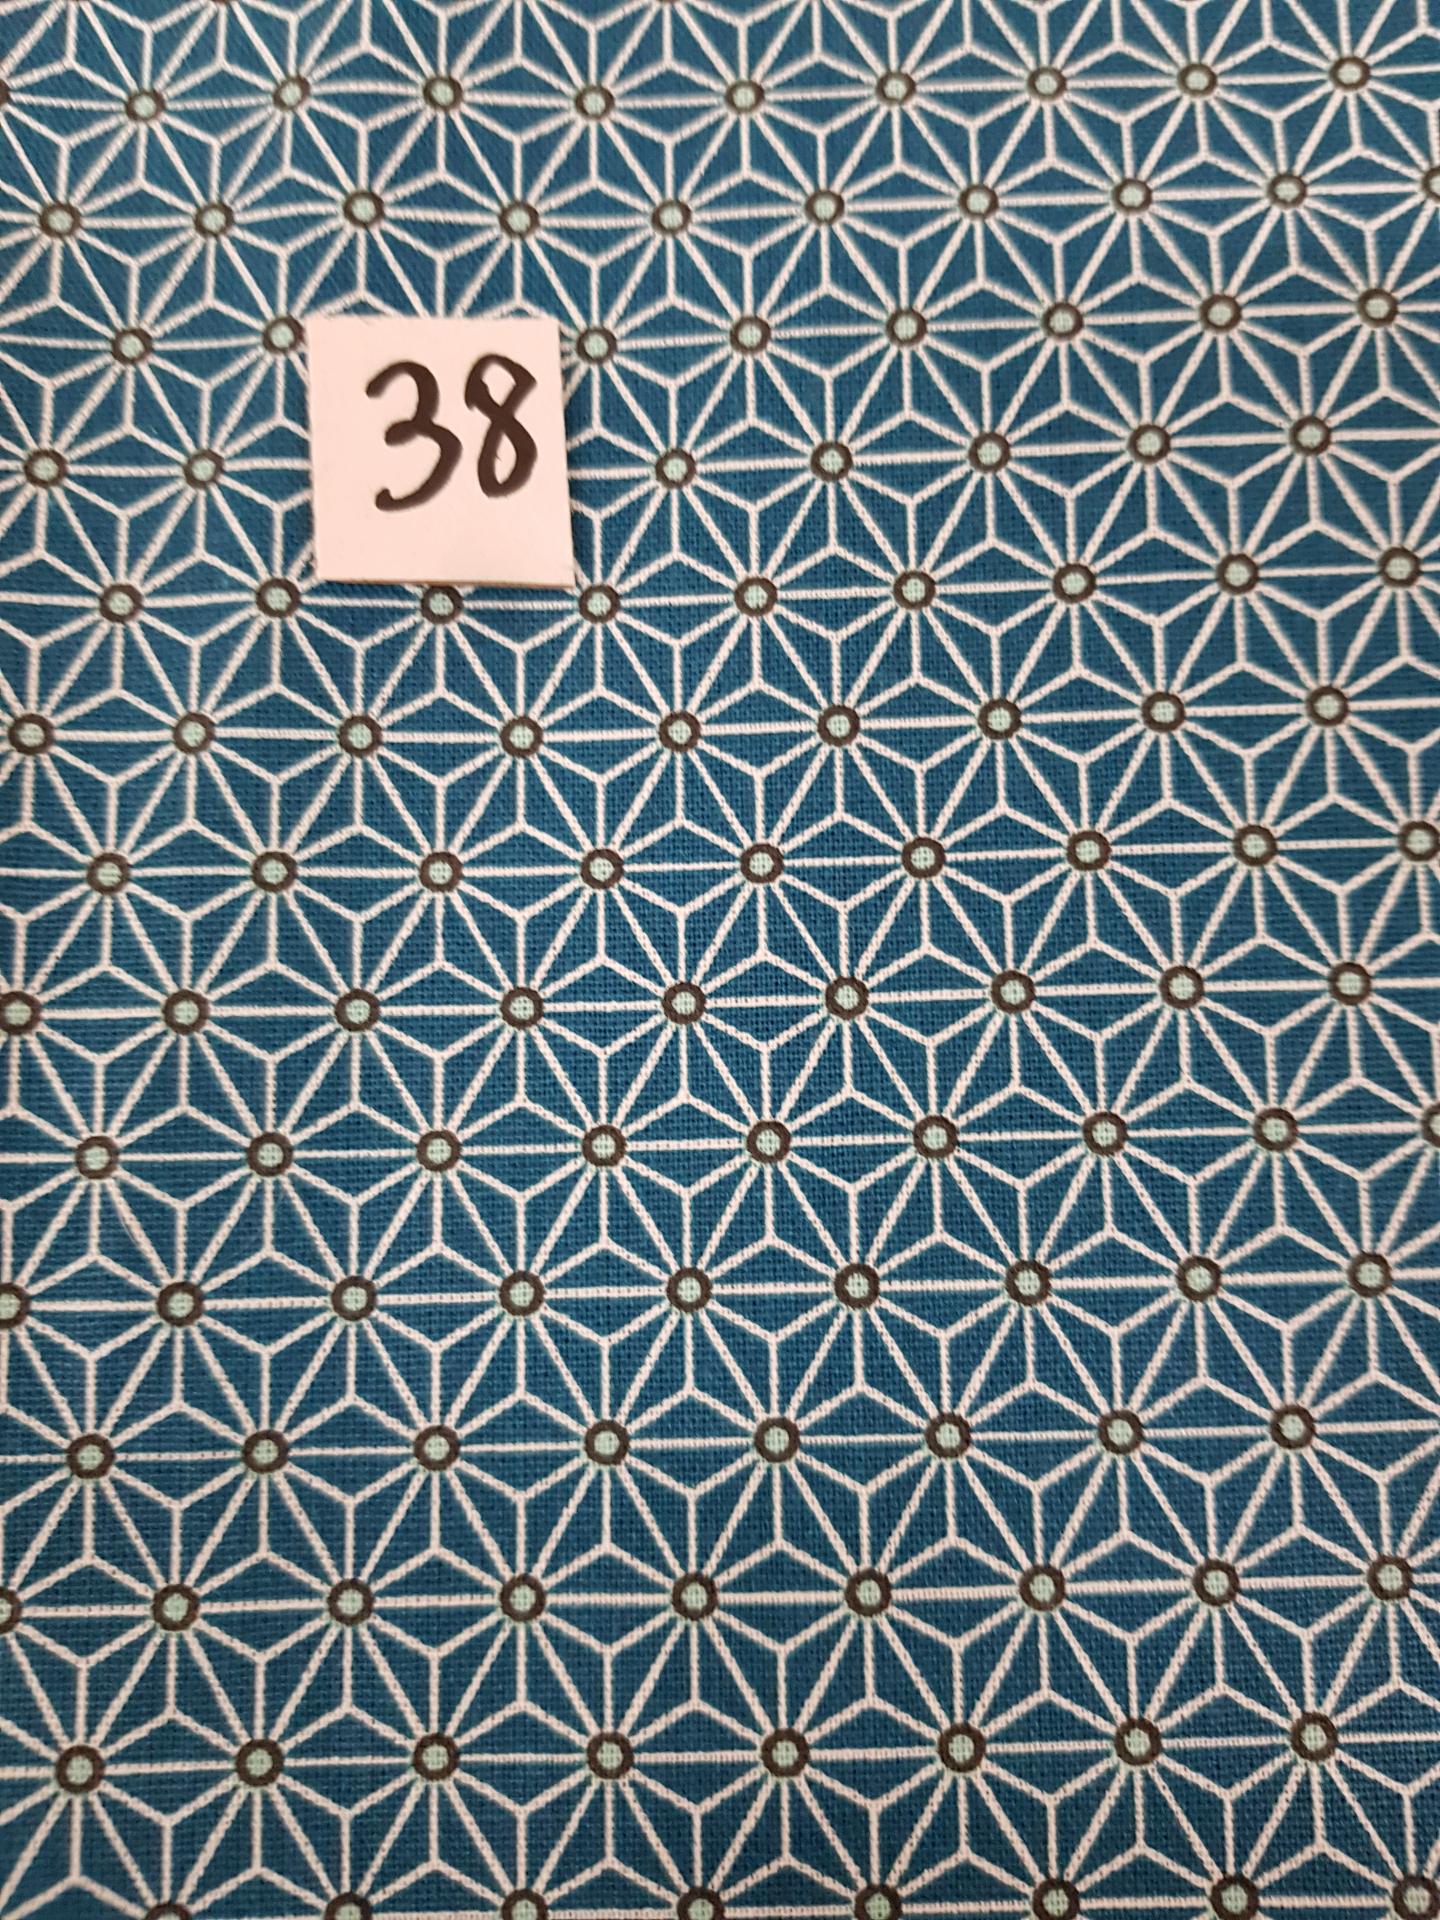 38 tissus lingettes fleurs bleu 38